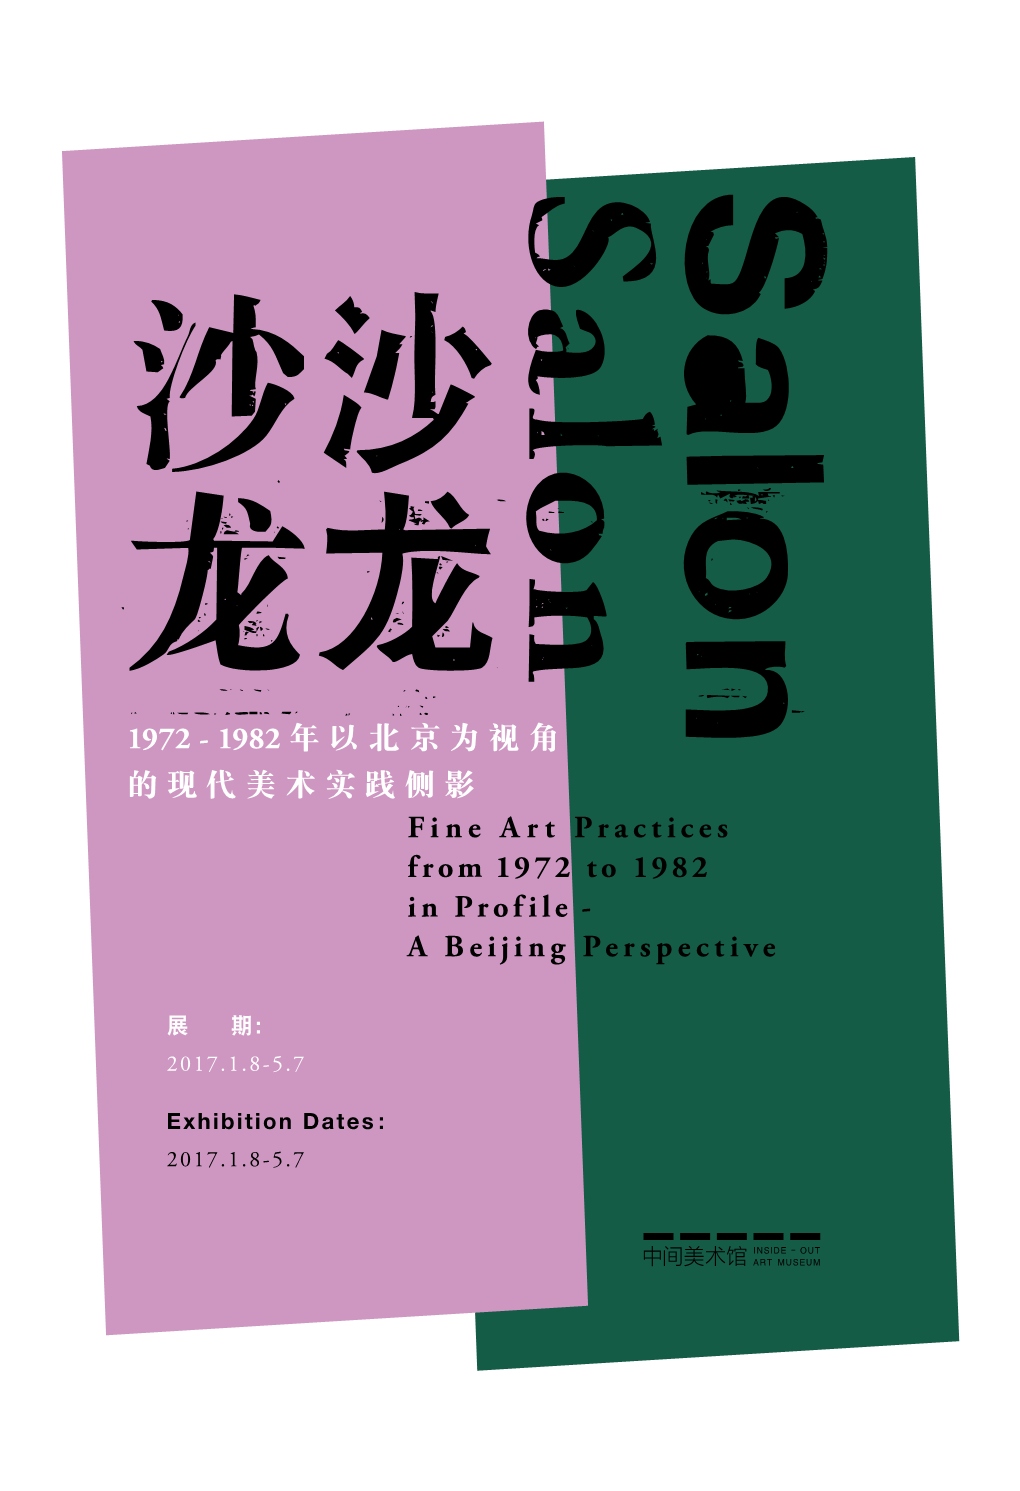 1982 年以北京为视角的现代美术实践侧影fine Art Practices from 1972 To